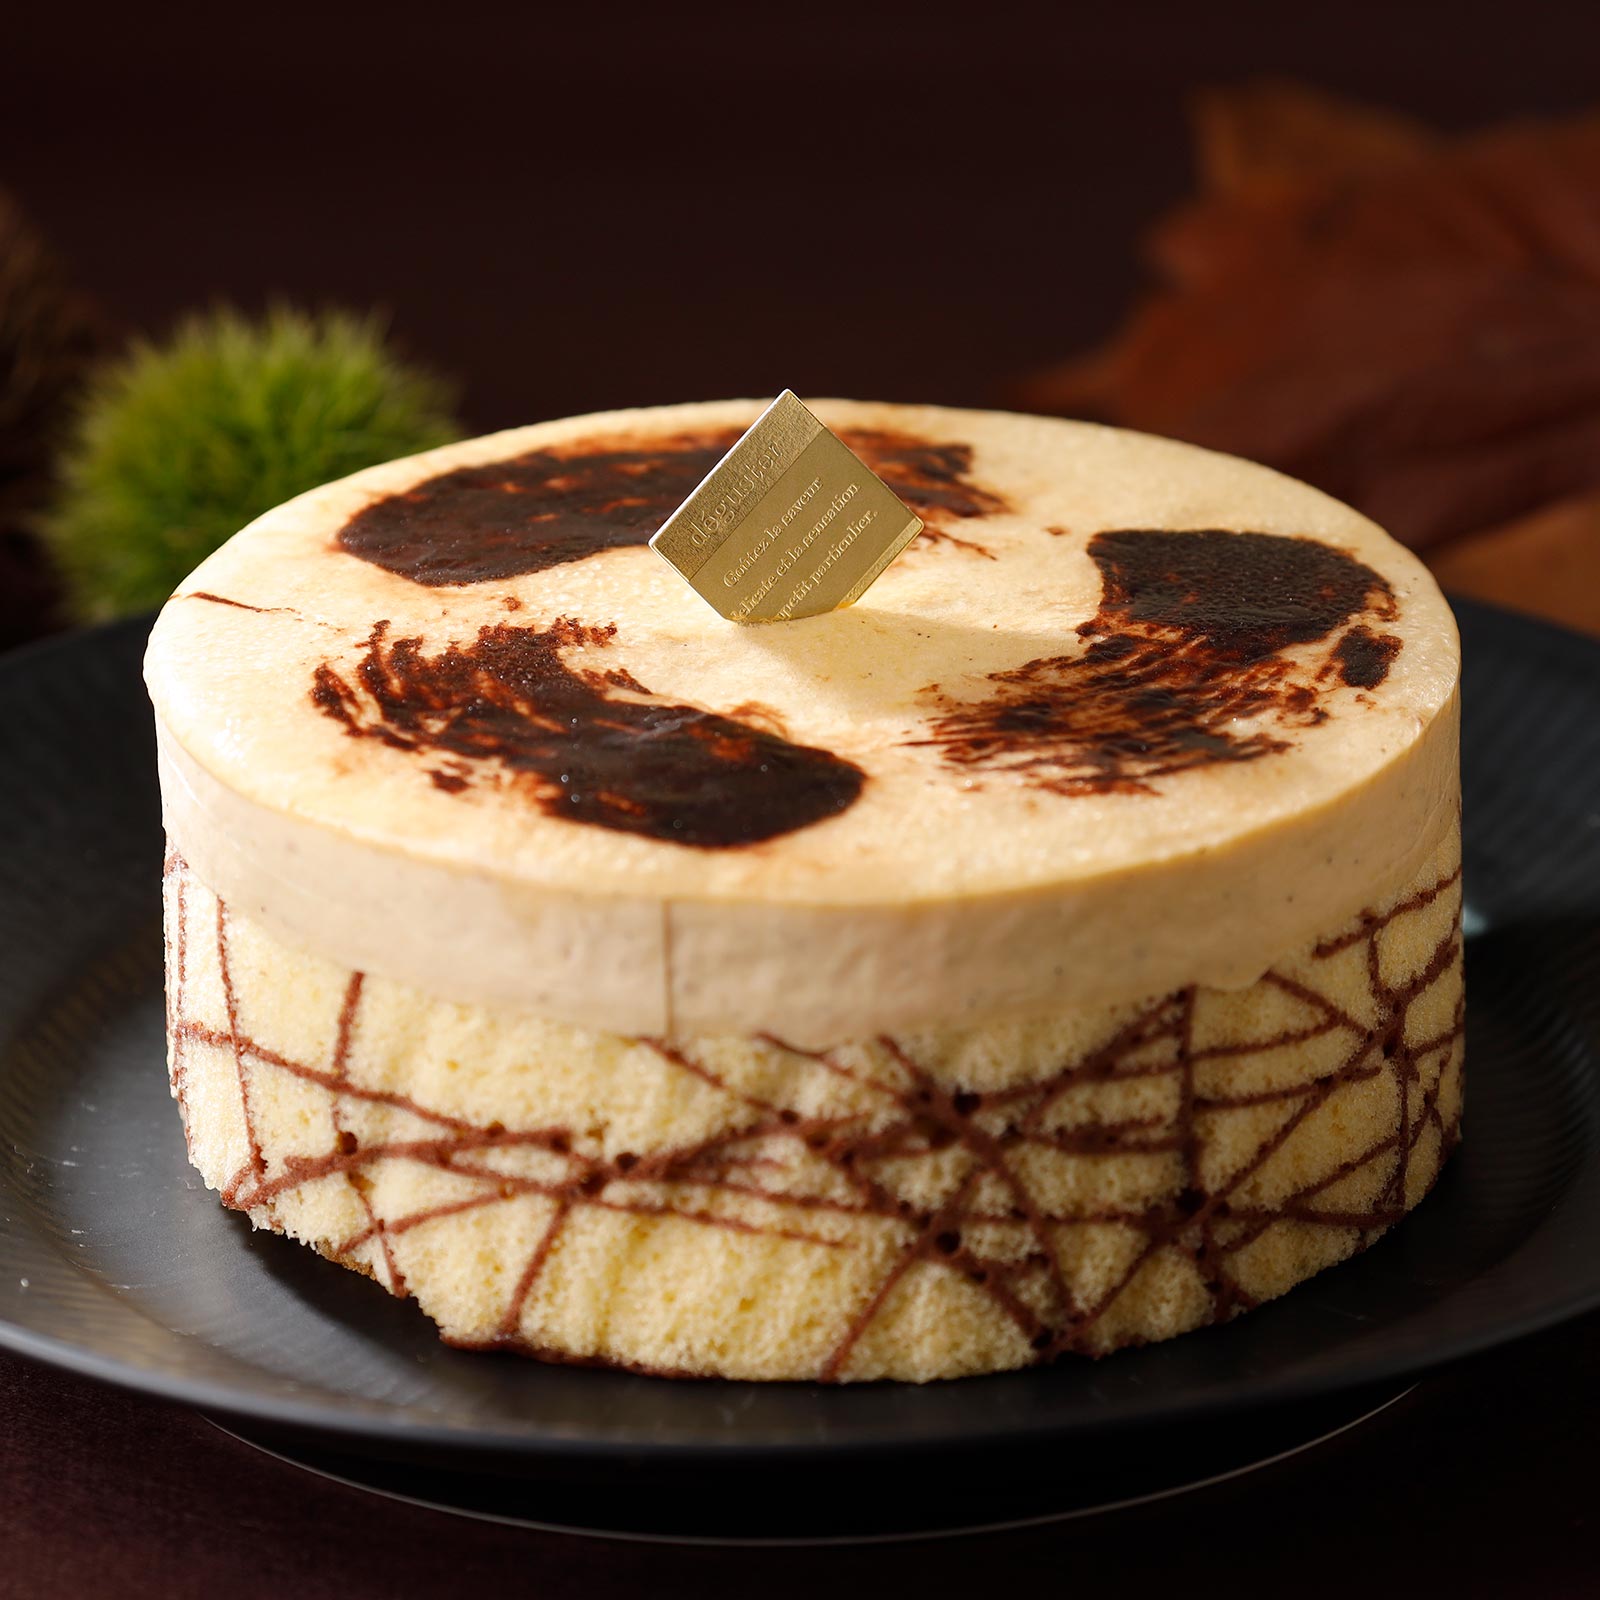 和栗とショコラが濃密にとろける、秋限定ケーキ。